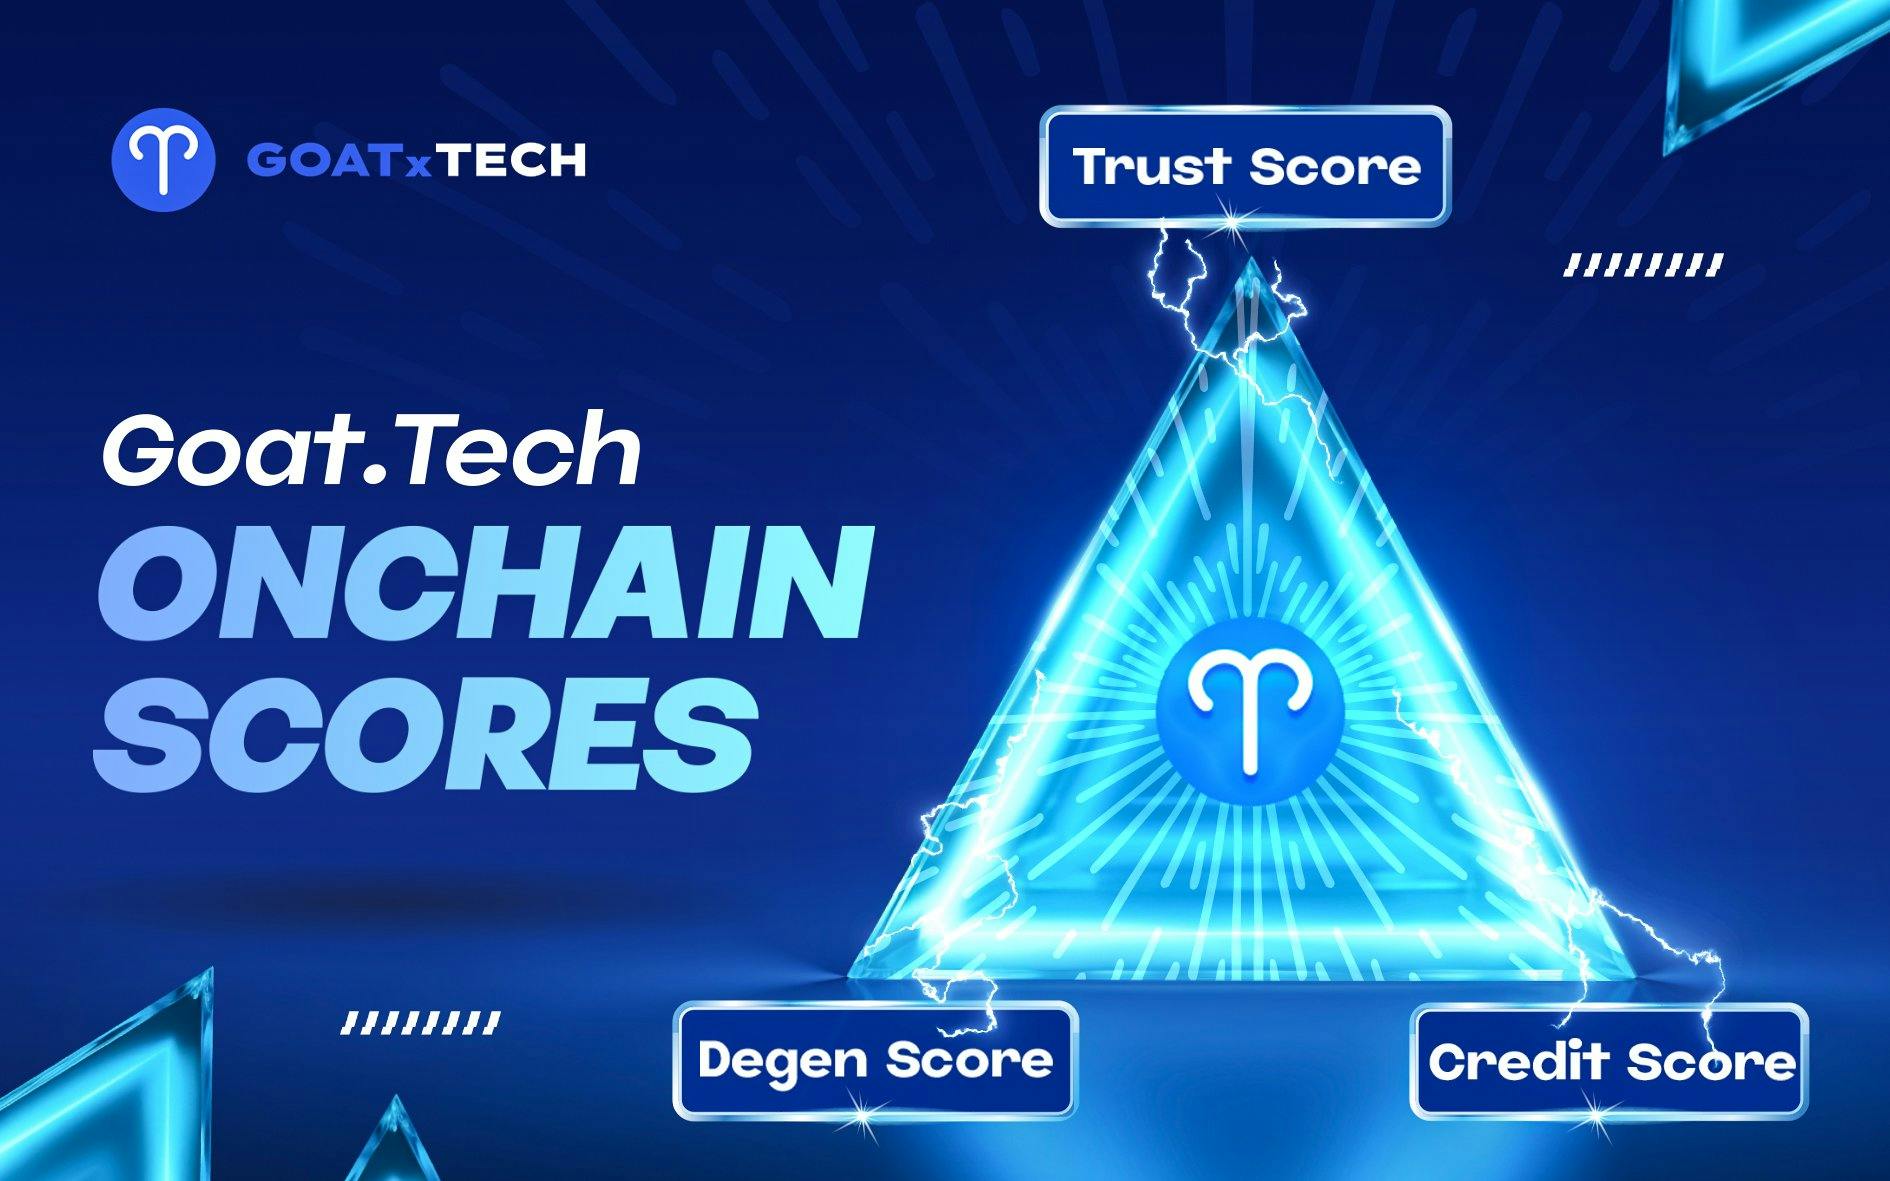 Goat.Tech's Onchain Scores: Trust Score, Credit Score, Degen Score